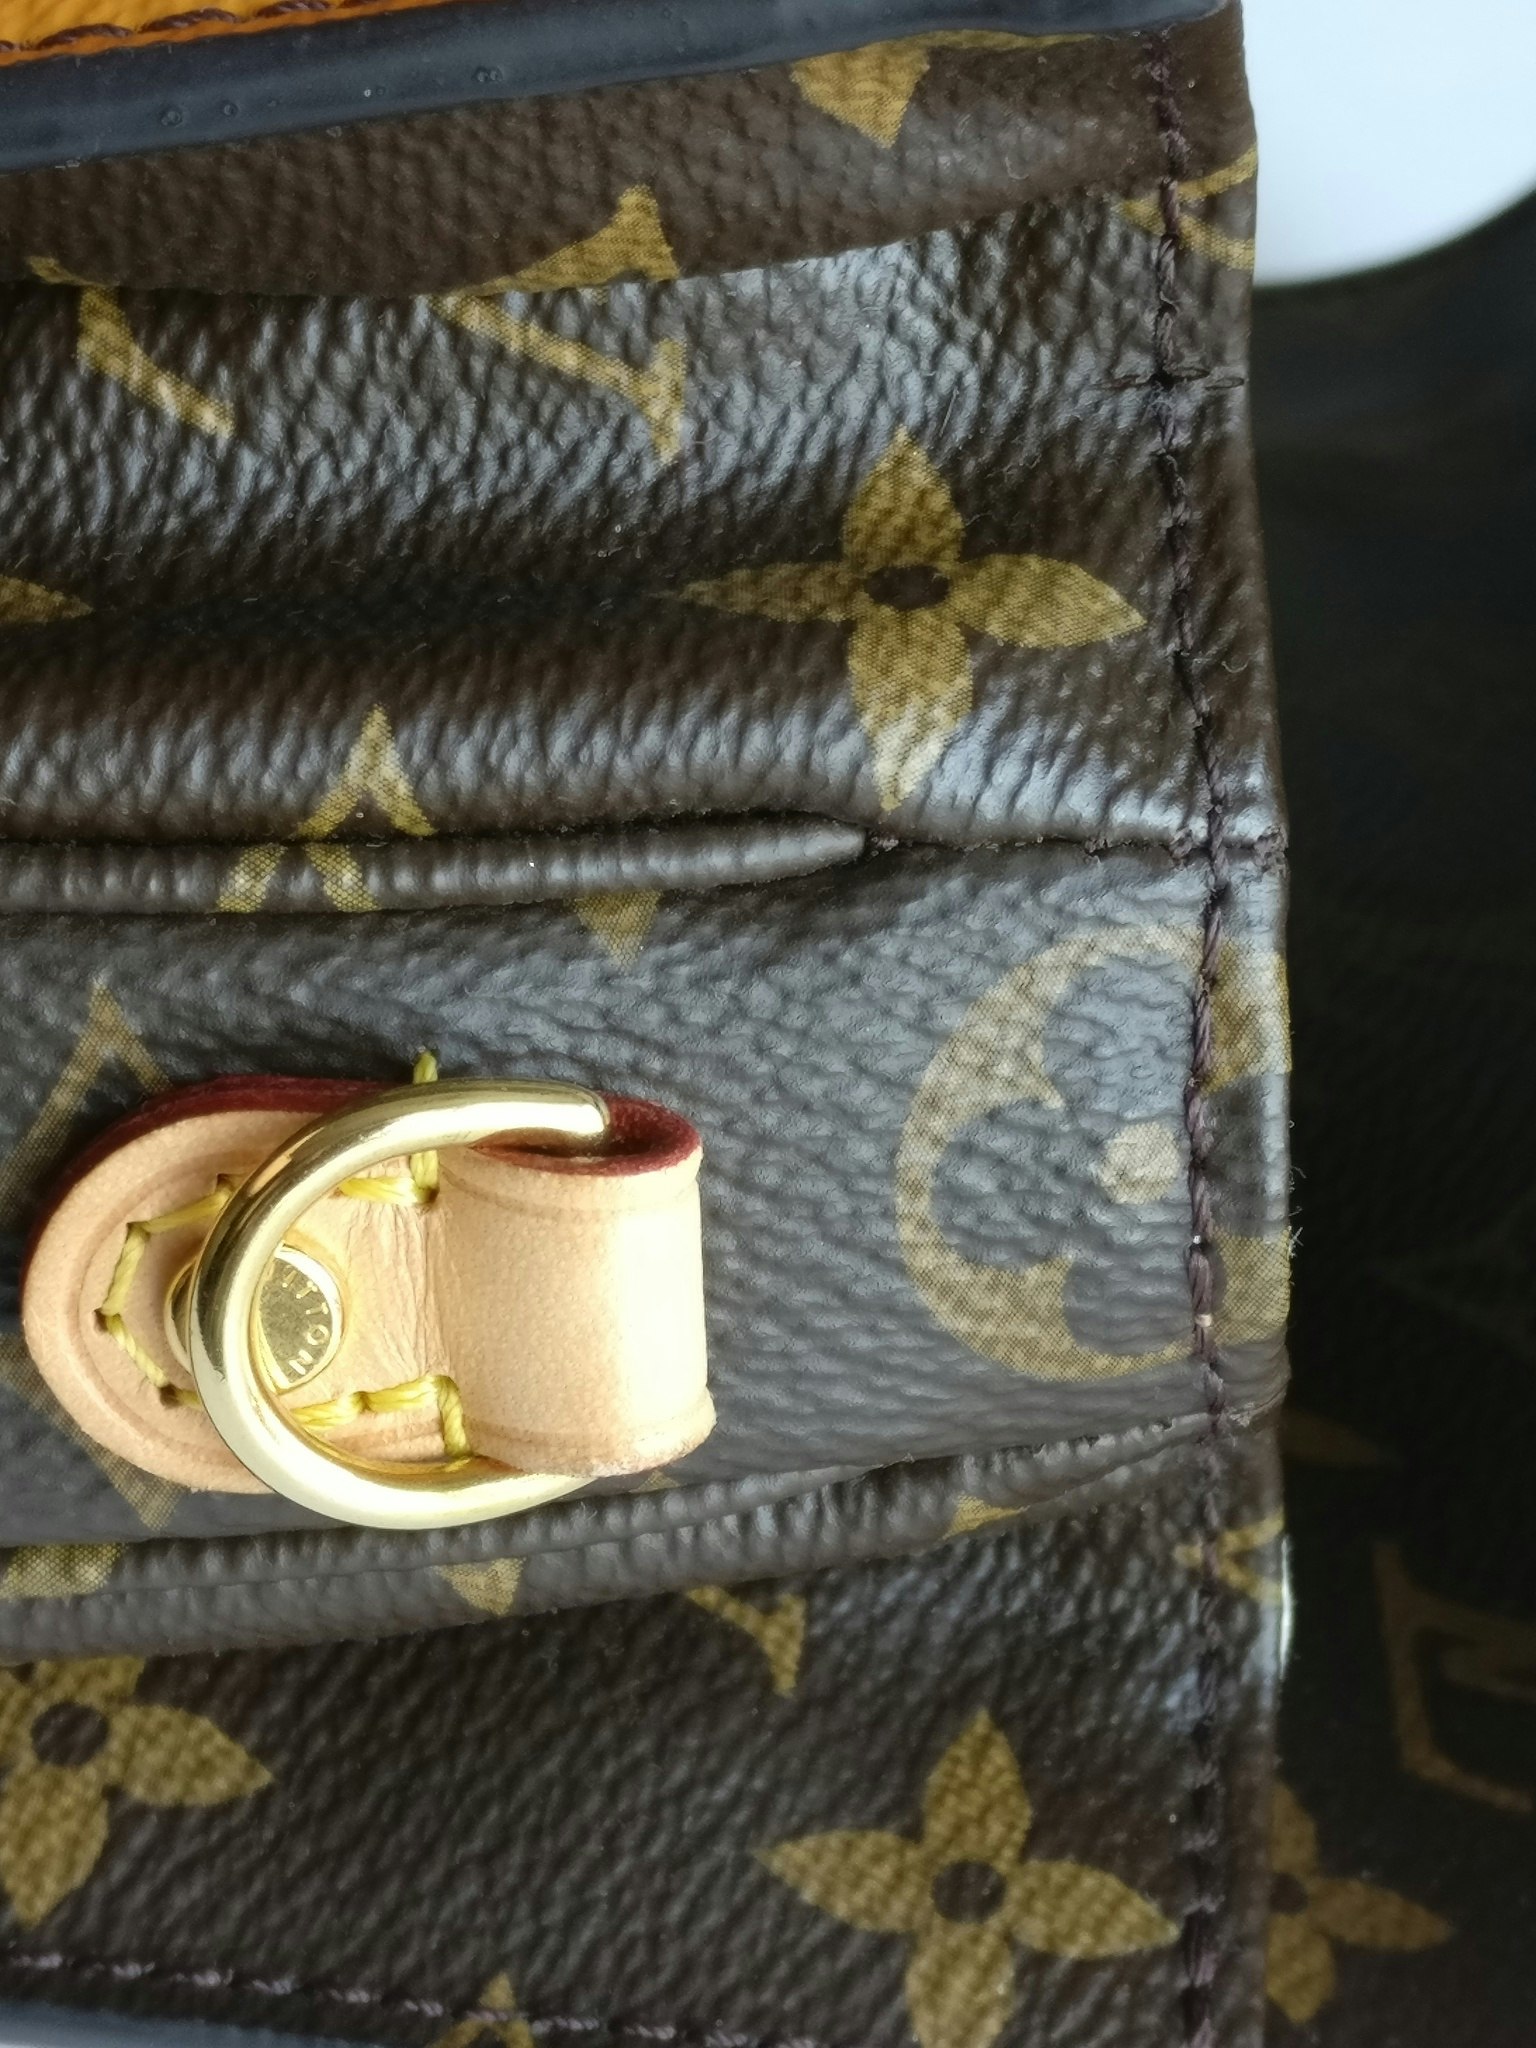 Authenticated Used Louis Vuitton Monogram Pochette Metis Summer Trunk  Limited M43628 Shoulder Bag 0238 LOUIS VUITTON 